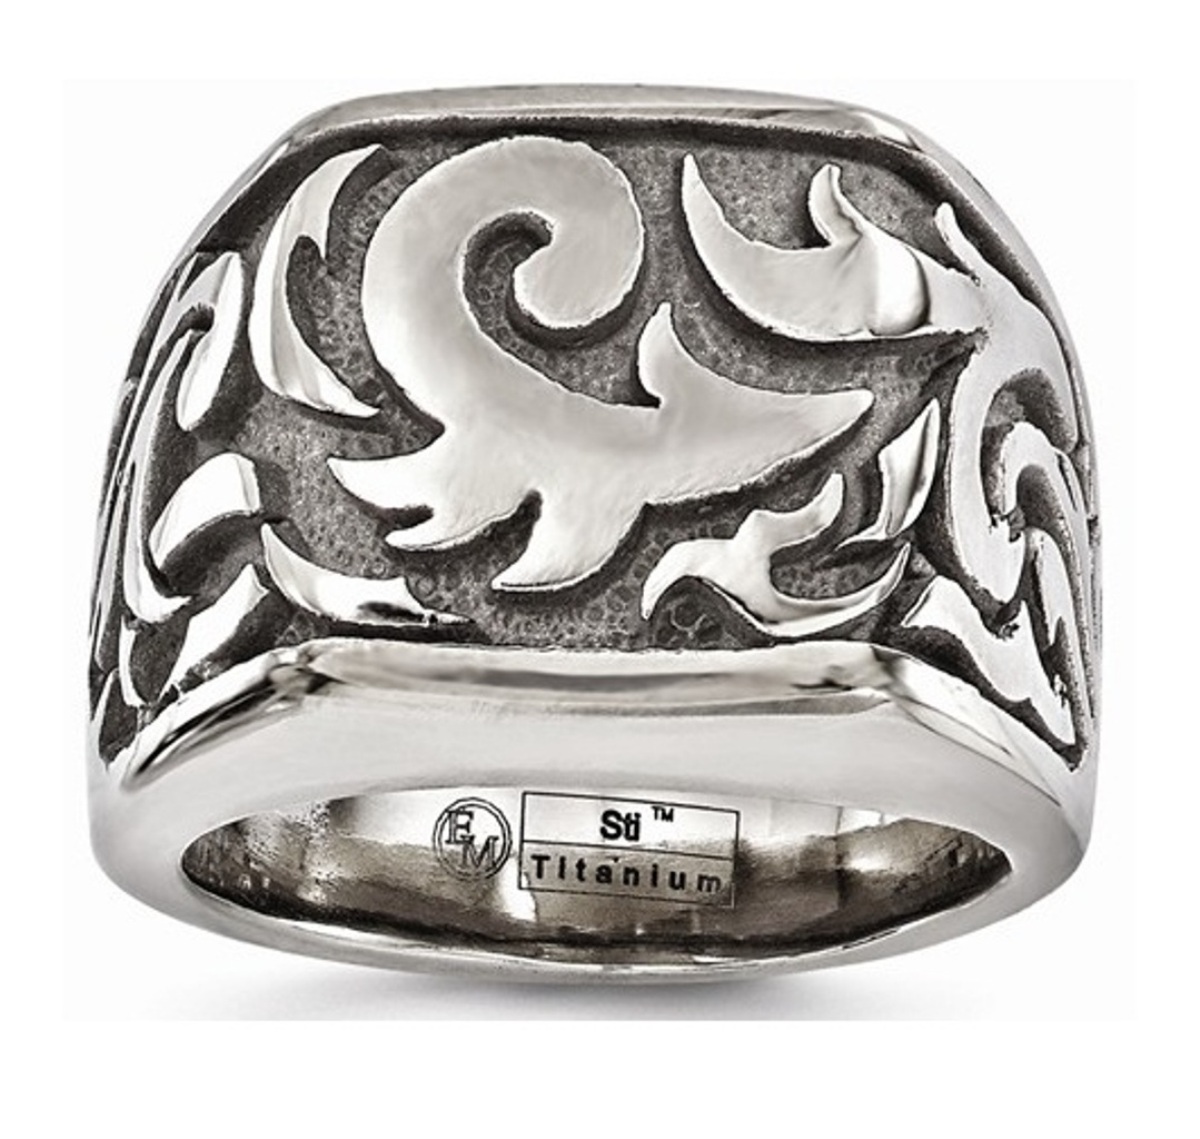  Titanium Casted Design Signet Ring